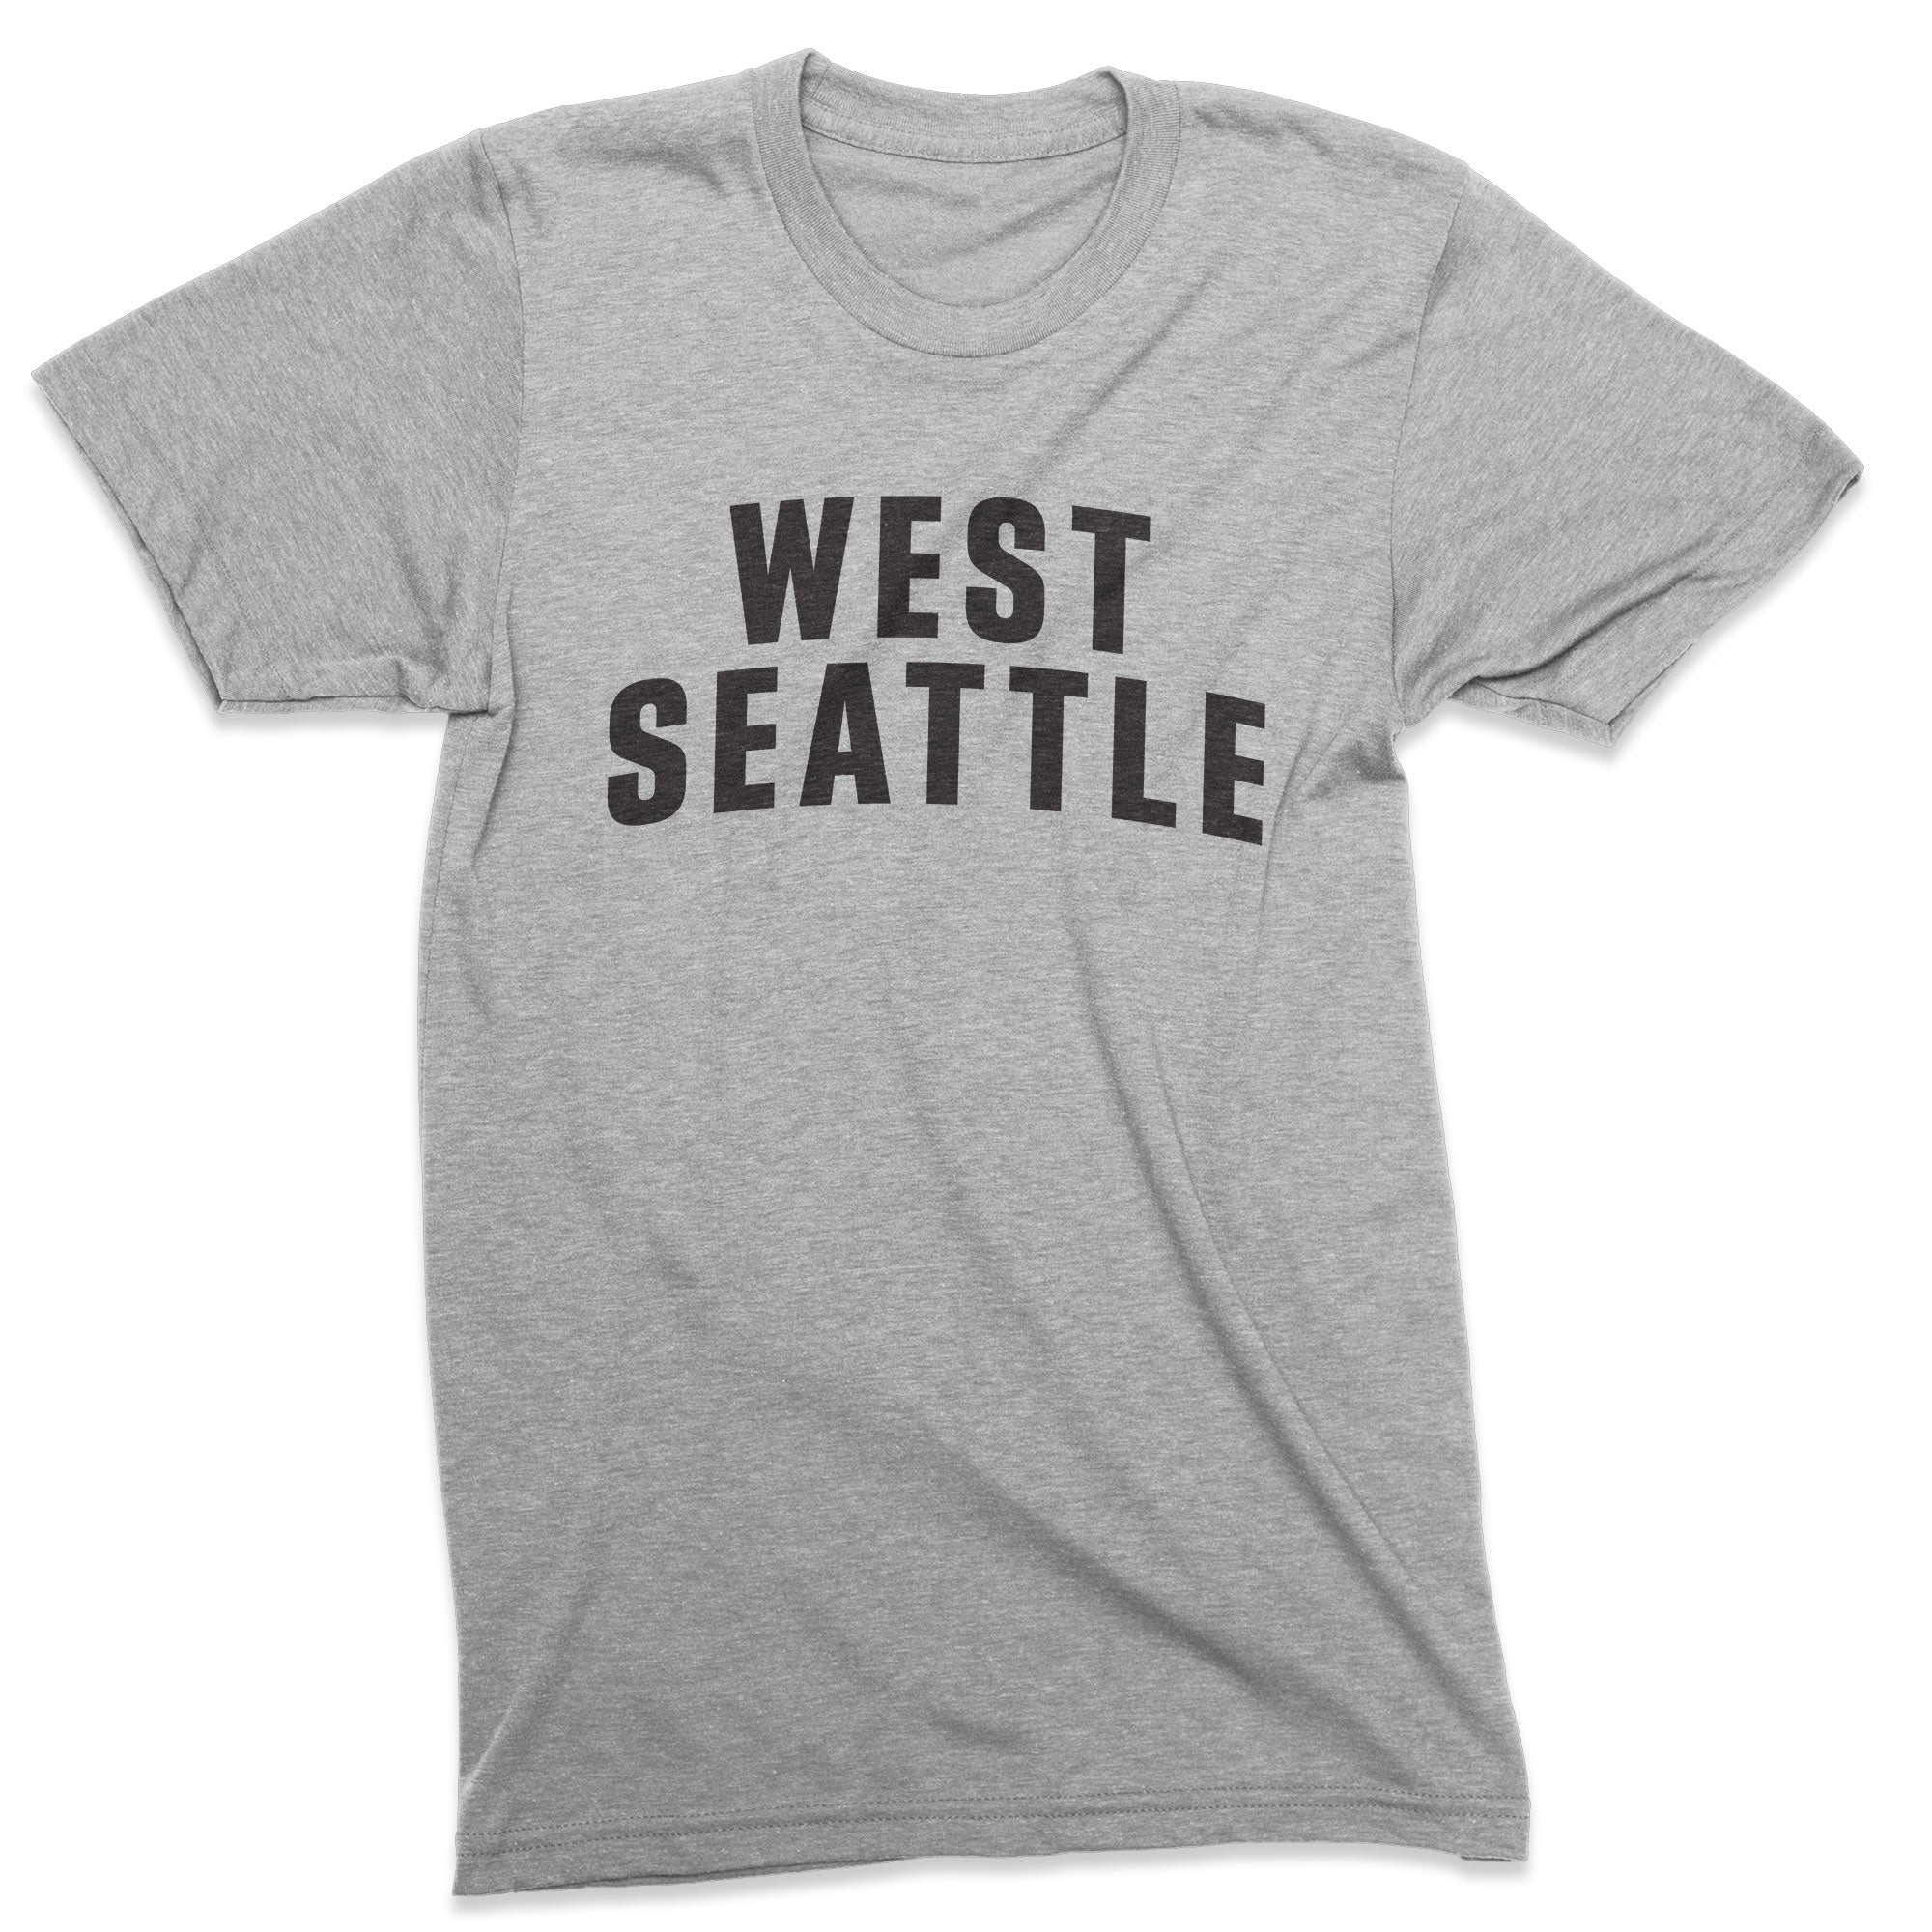 Seattle Neighborhood tshirt– Viaduct